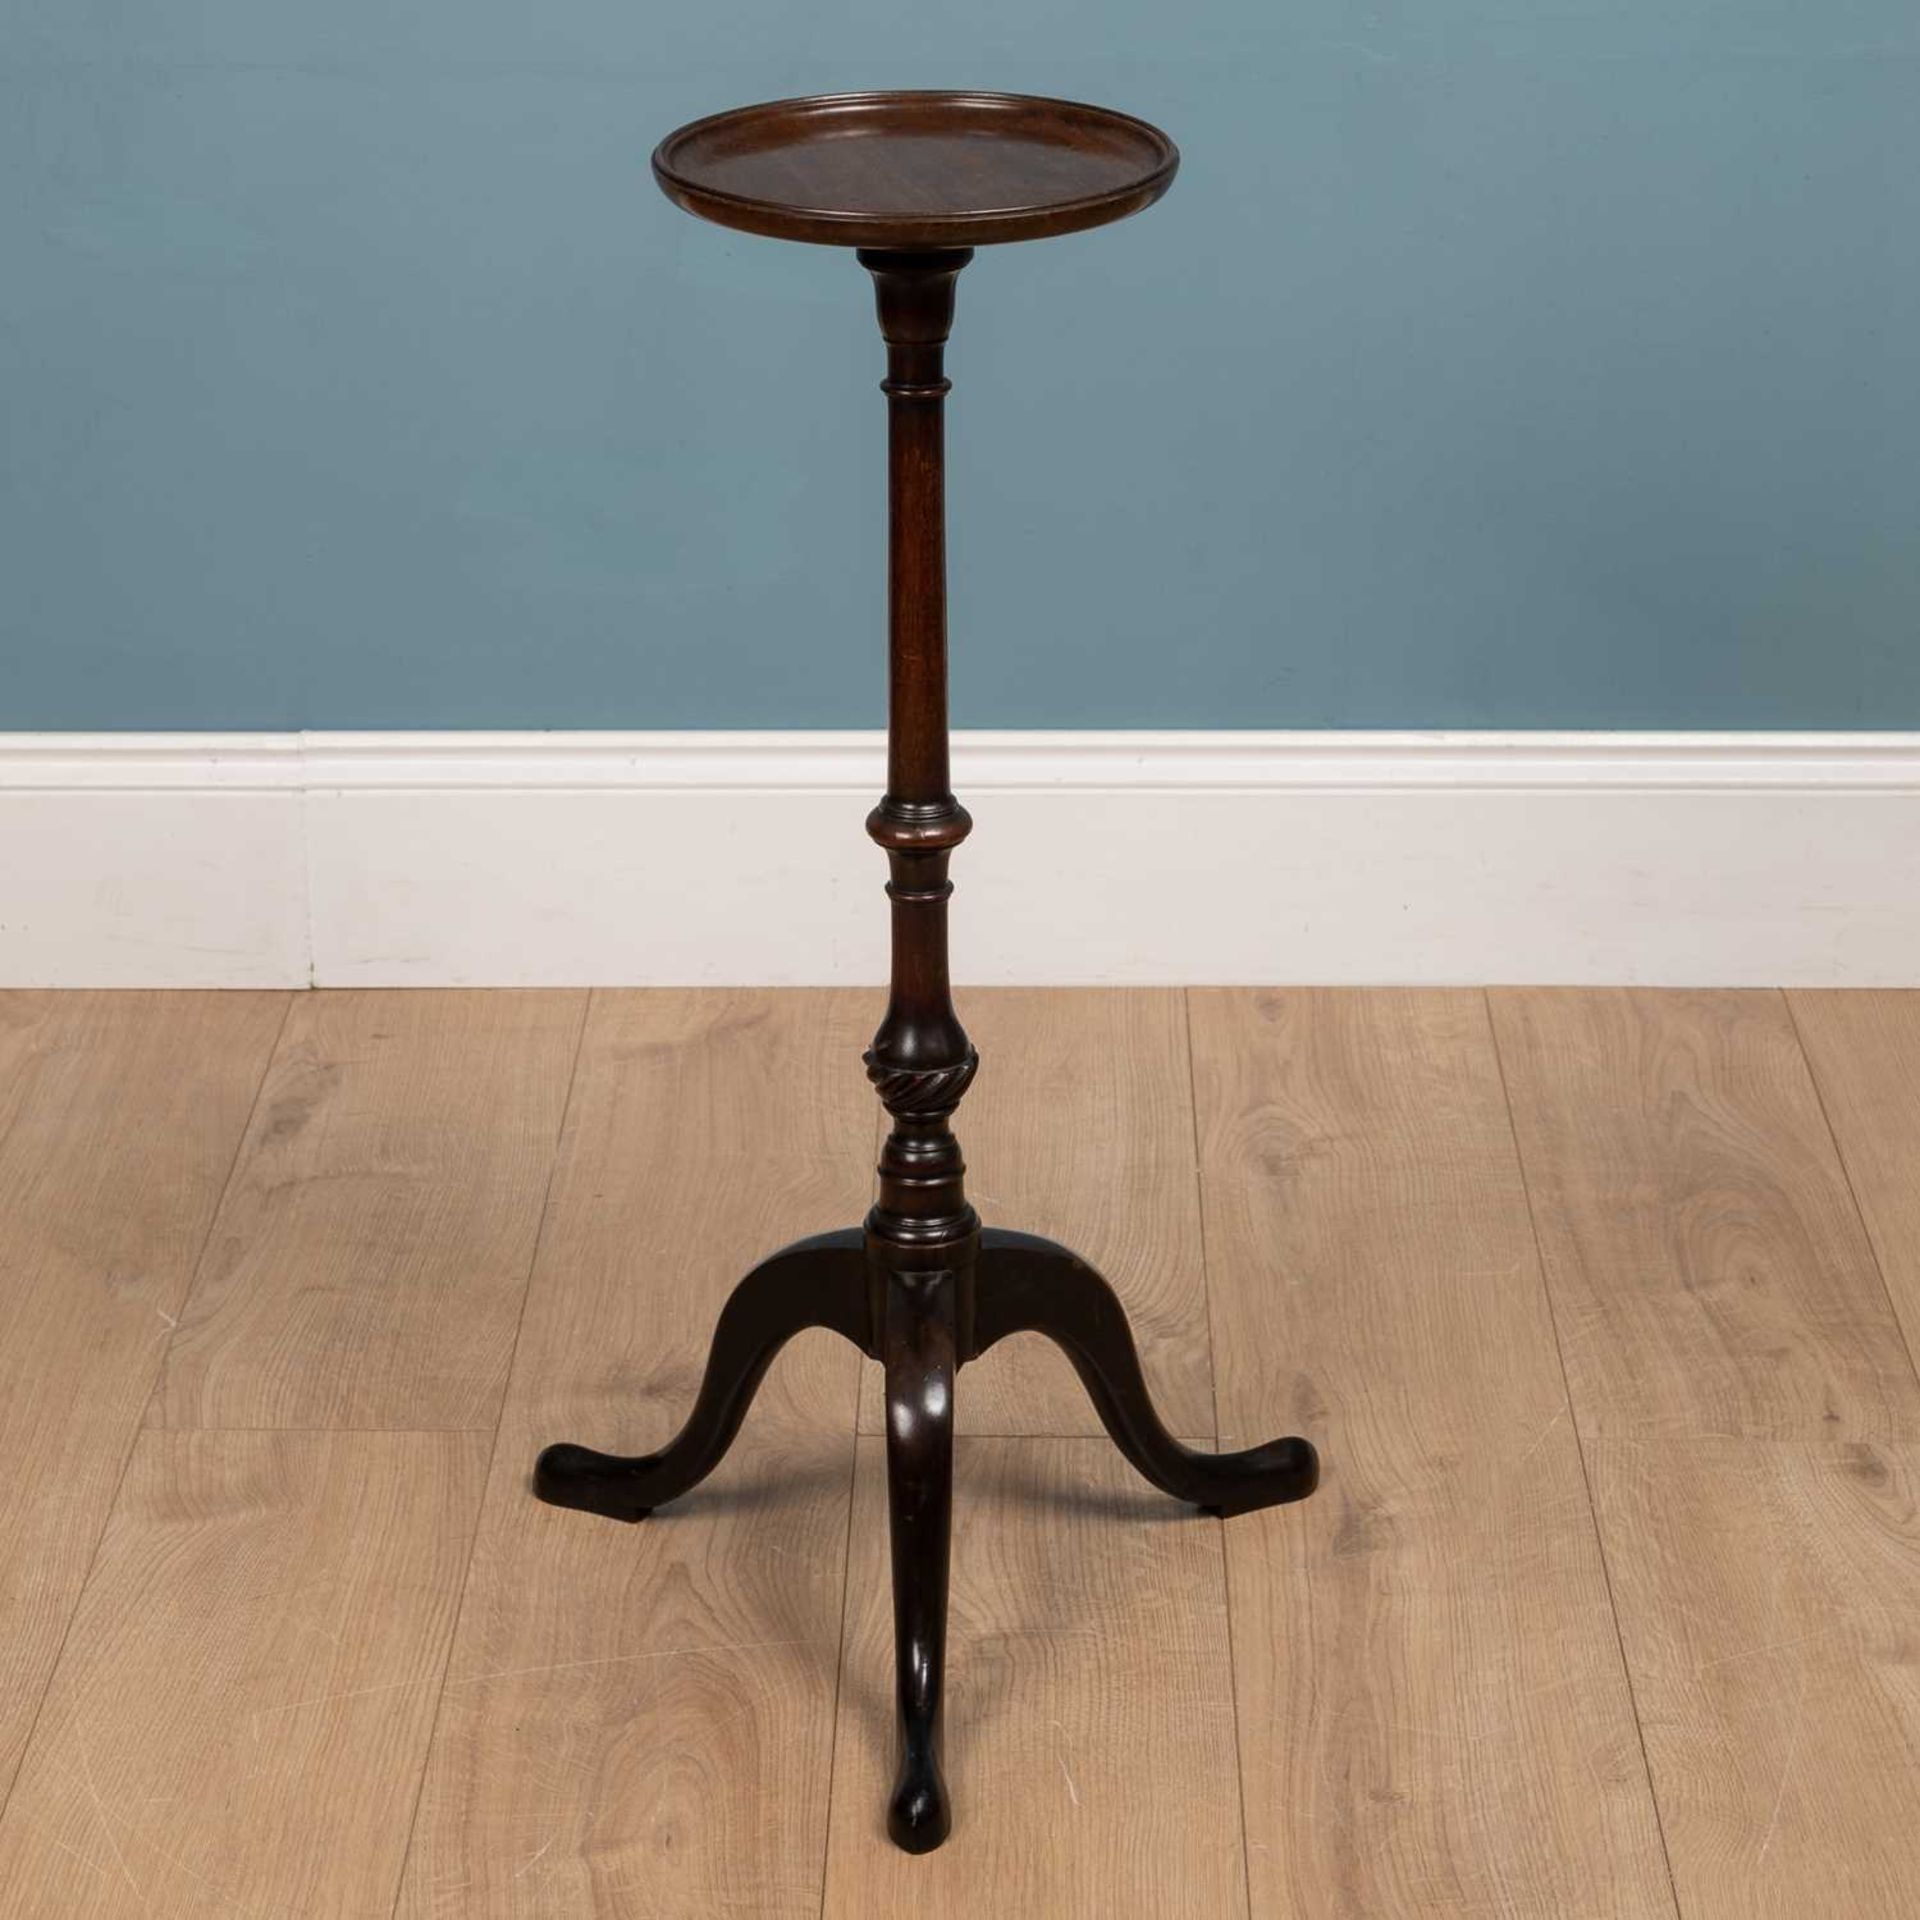 A 19th century mahogany lamp table